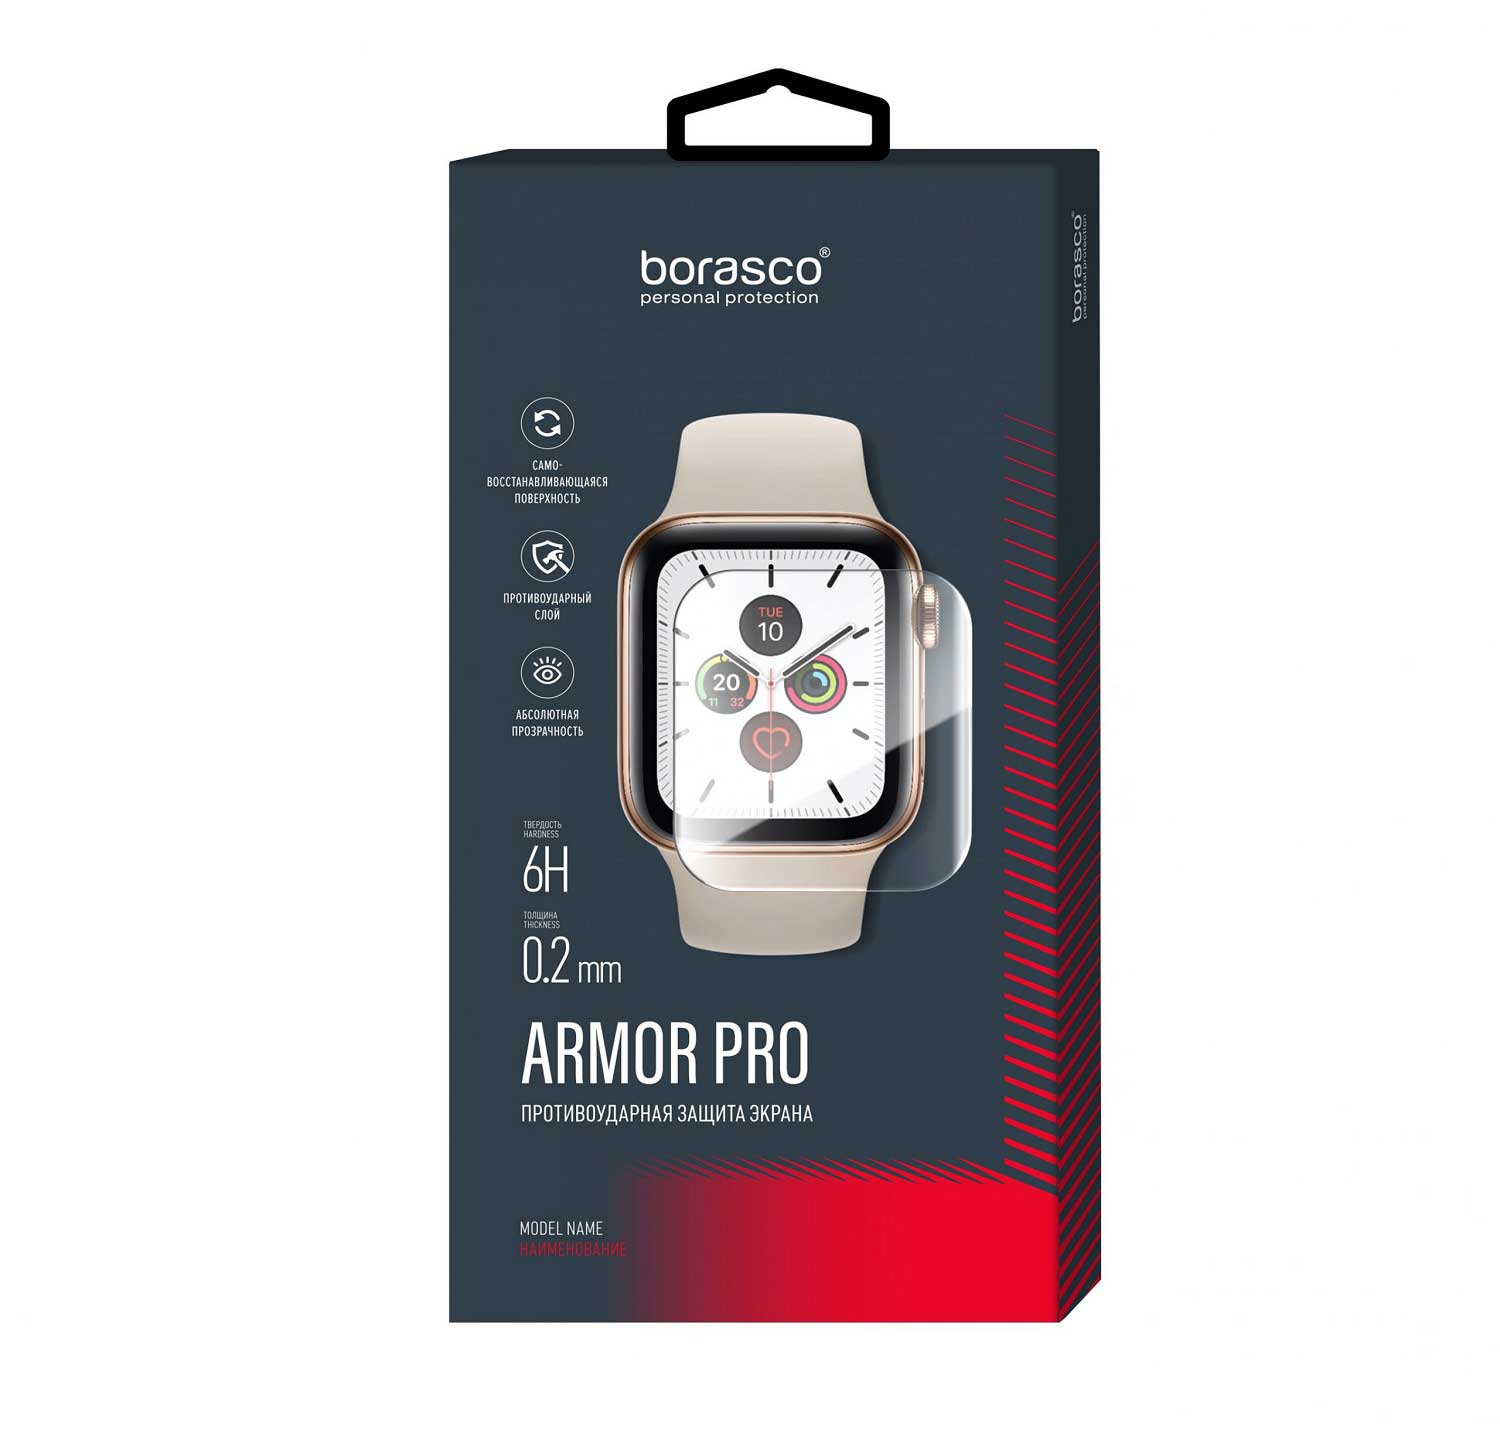 Защита экрана BoraSCO Armor Pro для Xiaomi Mi Band 3 матовый защита экрана borasco armor pro для honor band 2 матовый